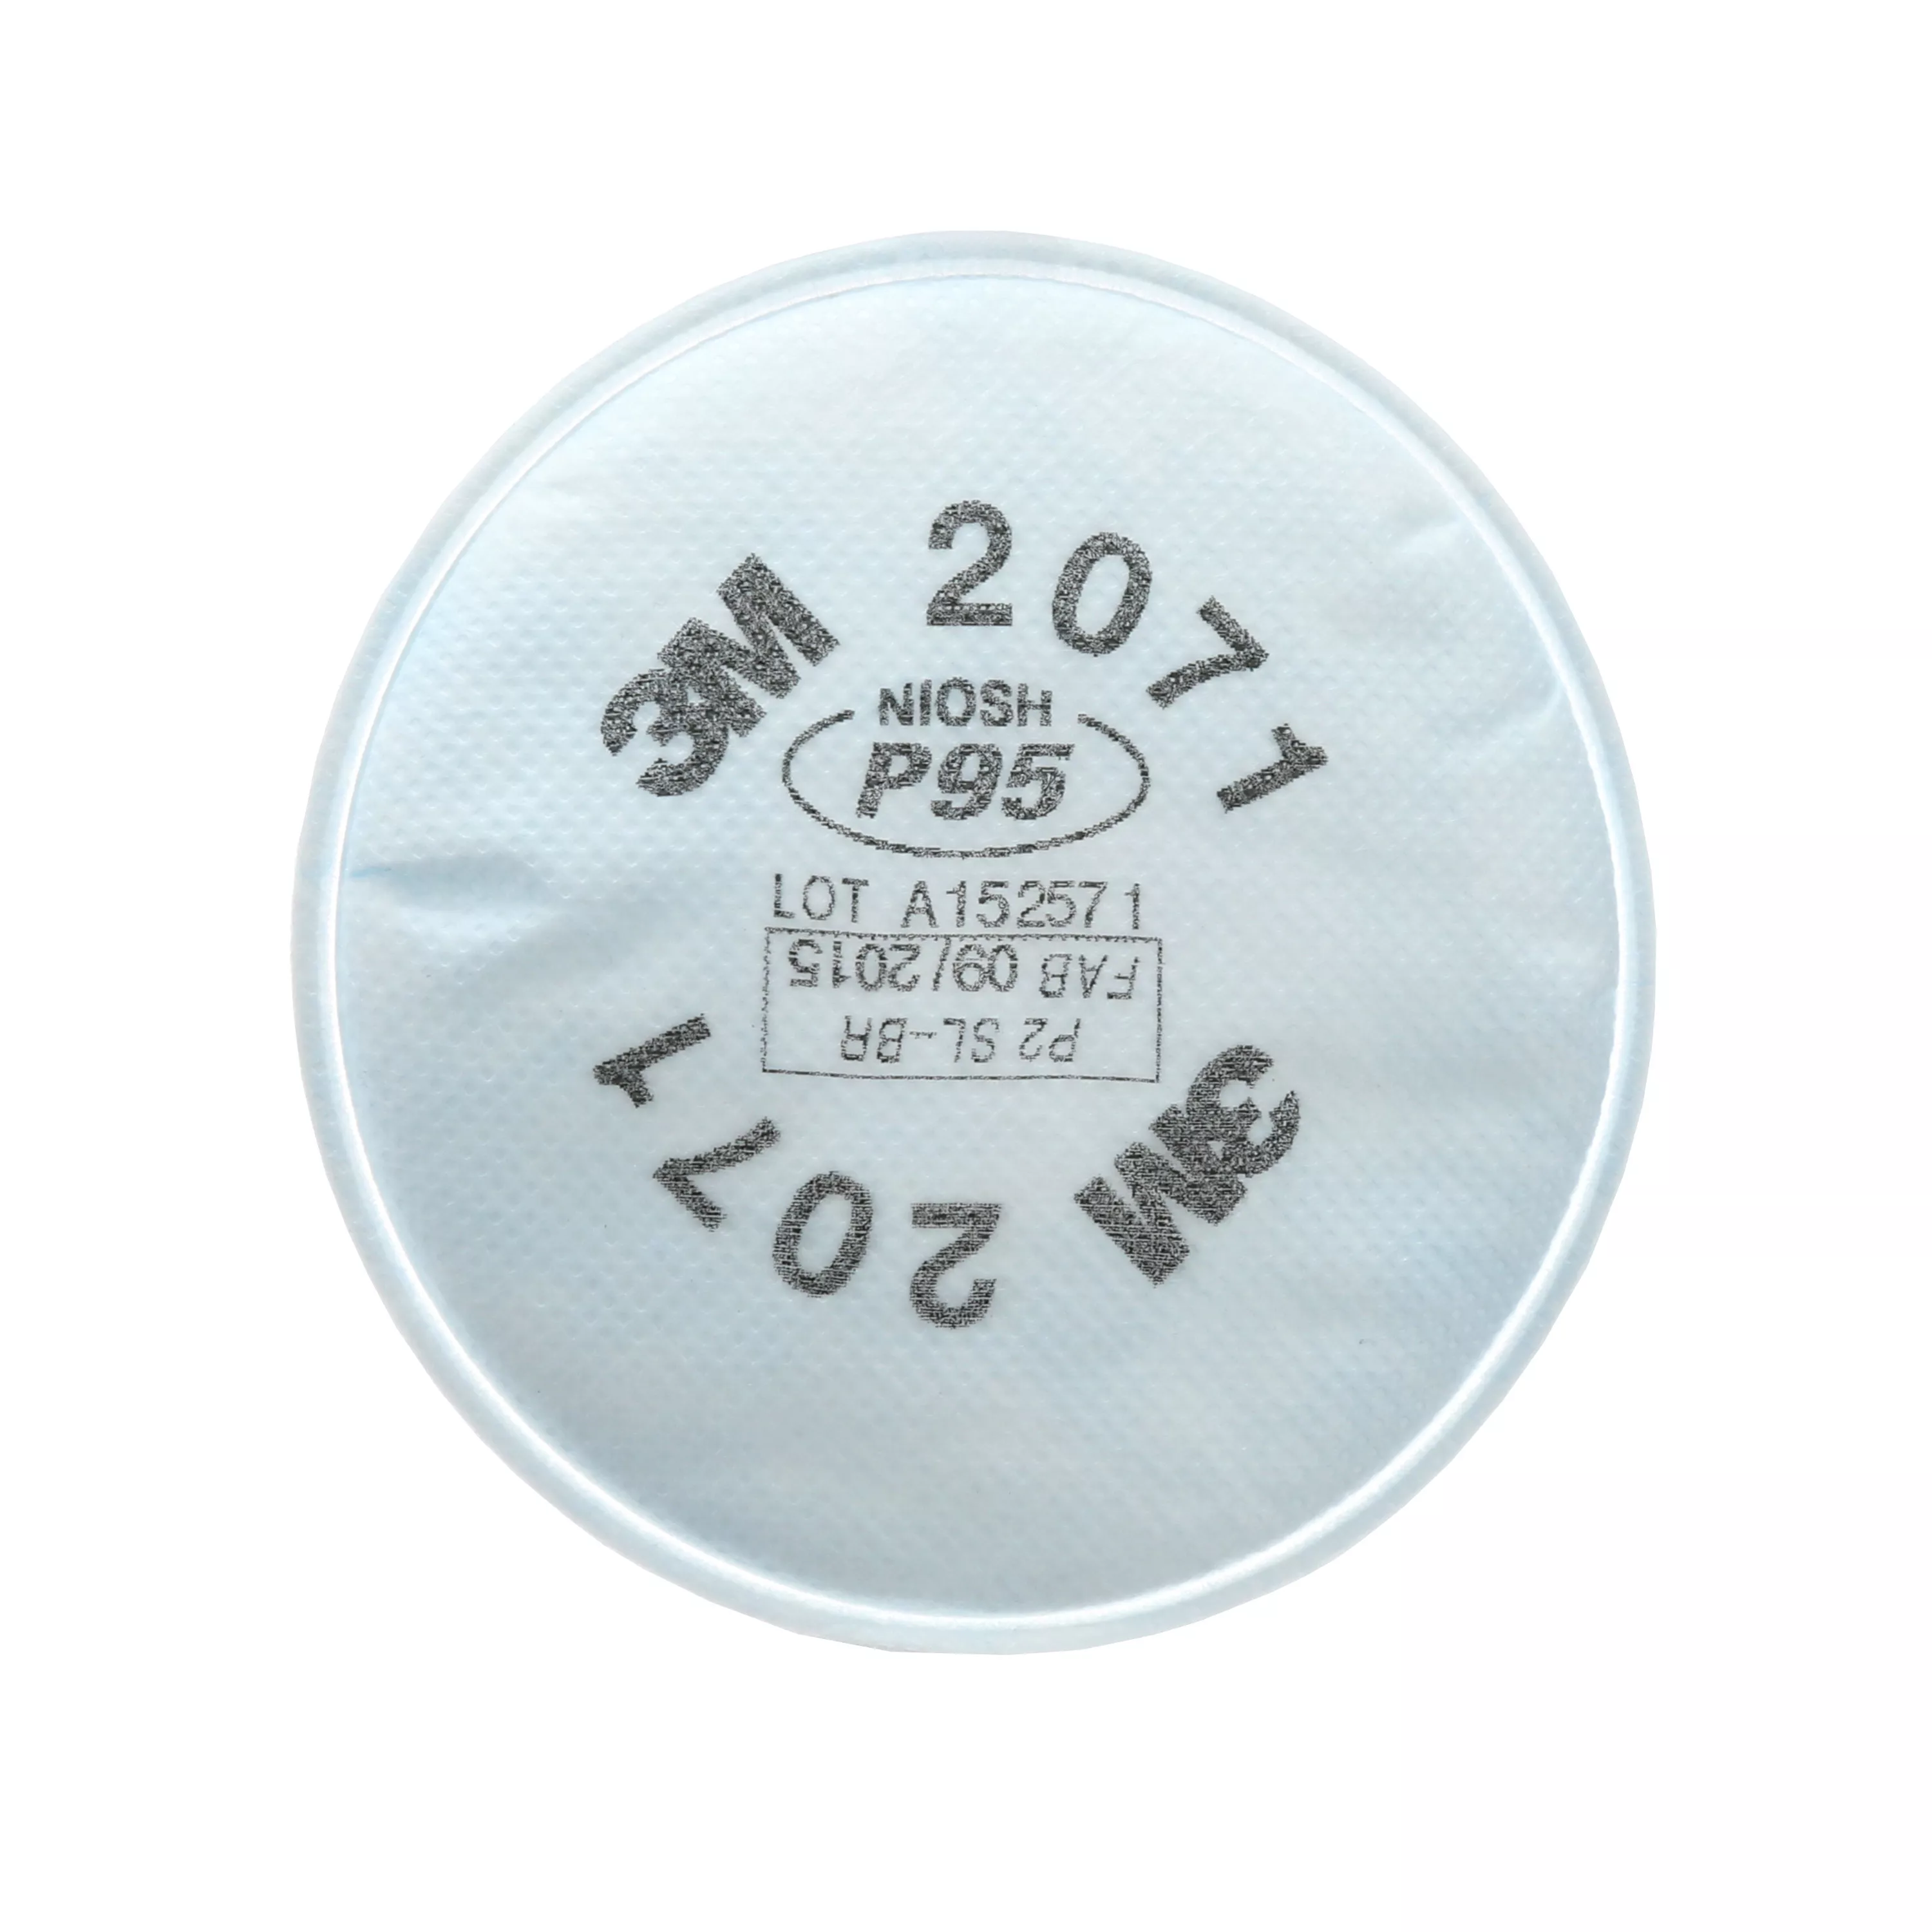 SKU 7000002058 | 3M™ Particulate Filter 2071